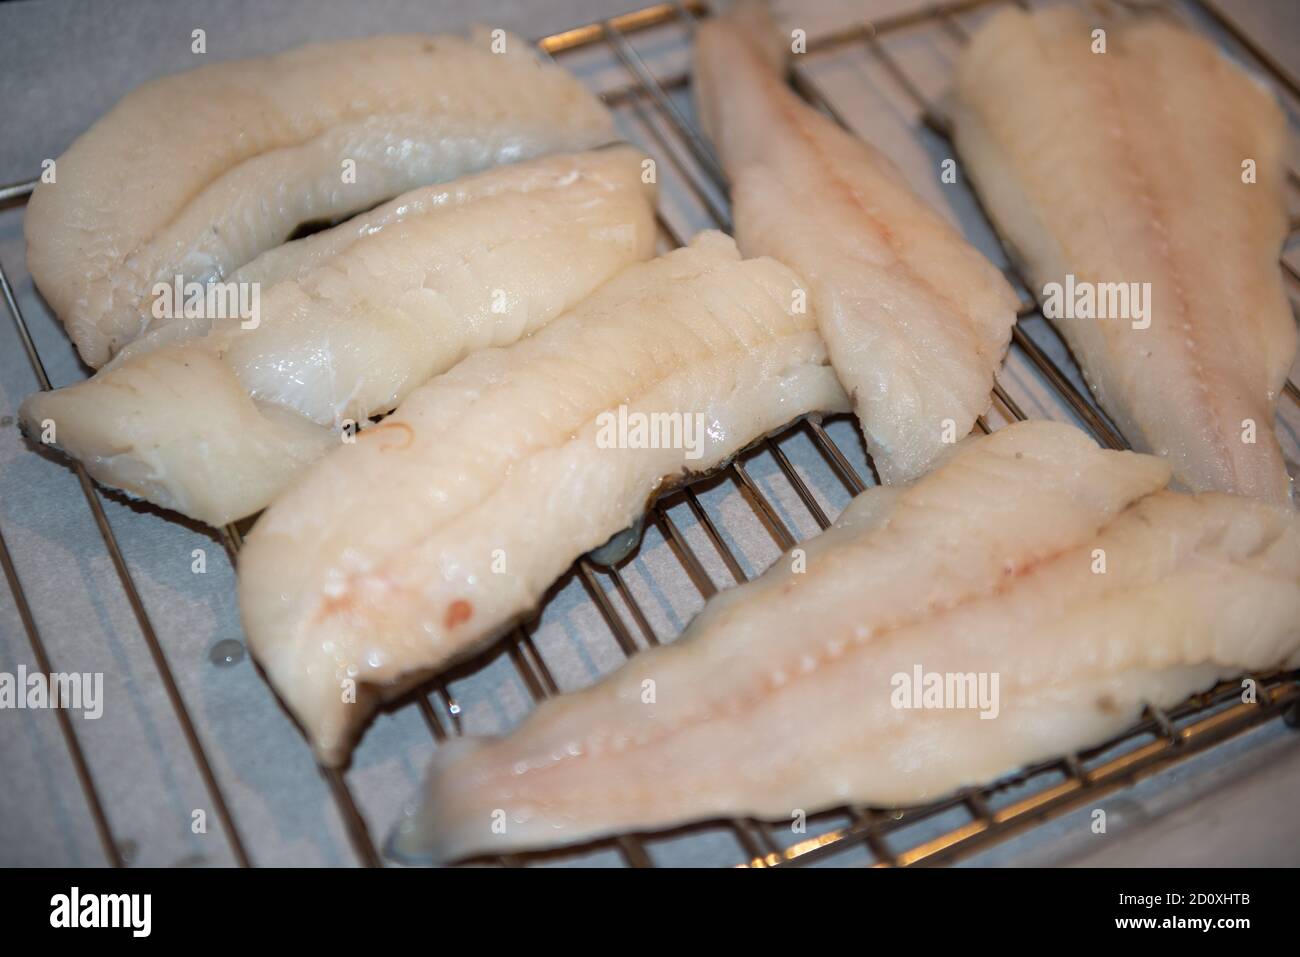 Mehrere weiße Wildcodfish-Filets auf einem Metallgestell trocknen. Der rohe Fisch wird in einer Restaurantküche zubereitet. Stockfoto